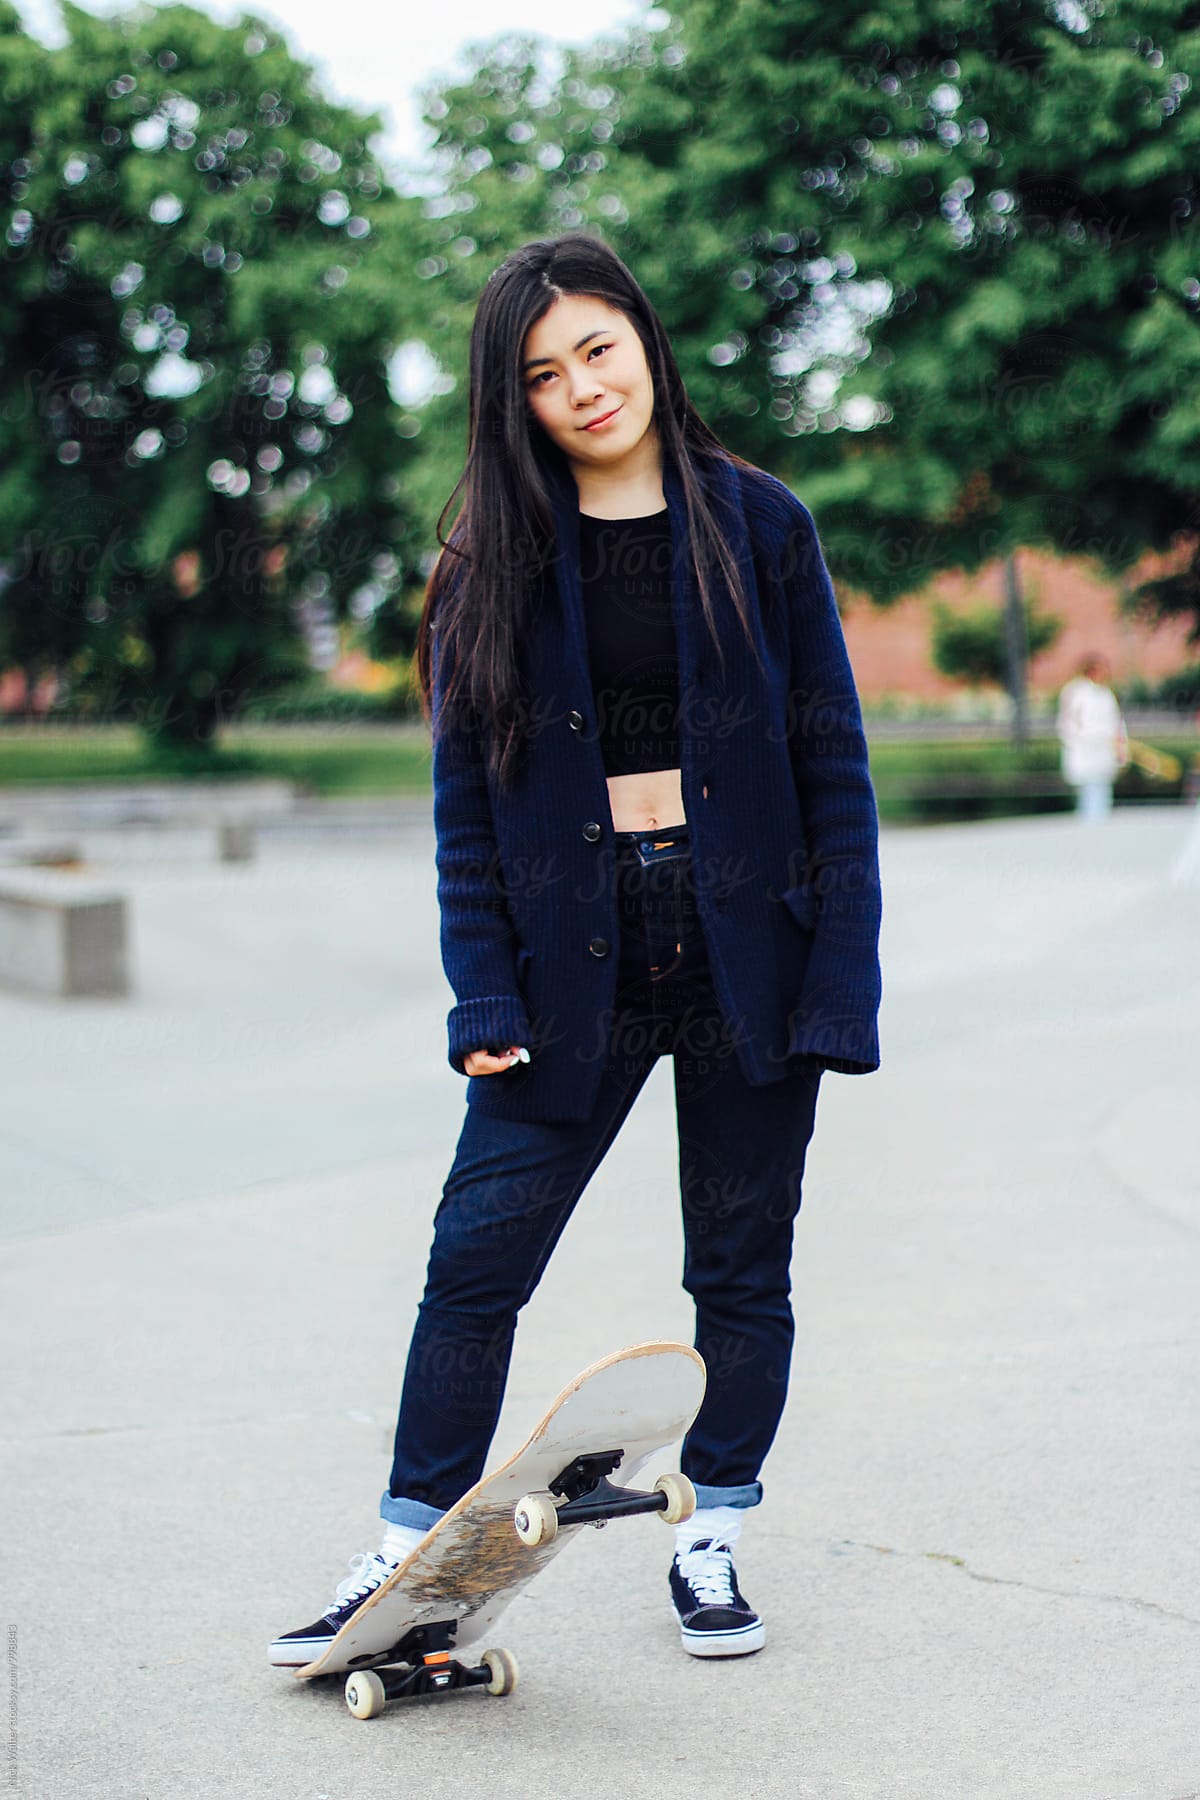 Nice skater girl asian